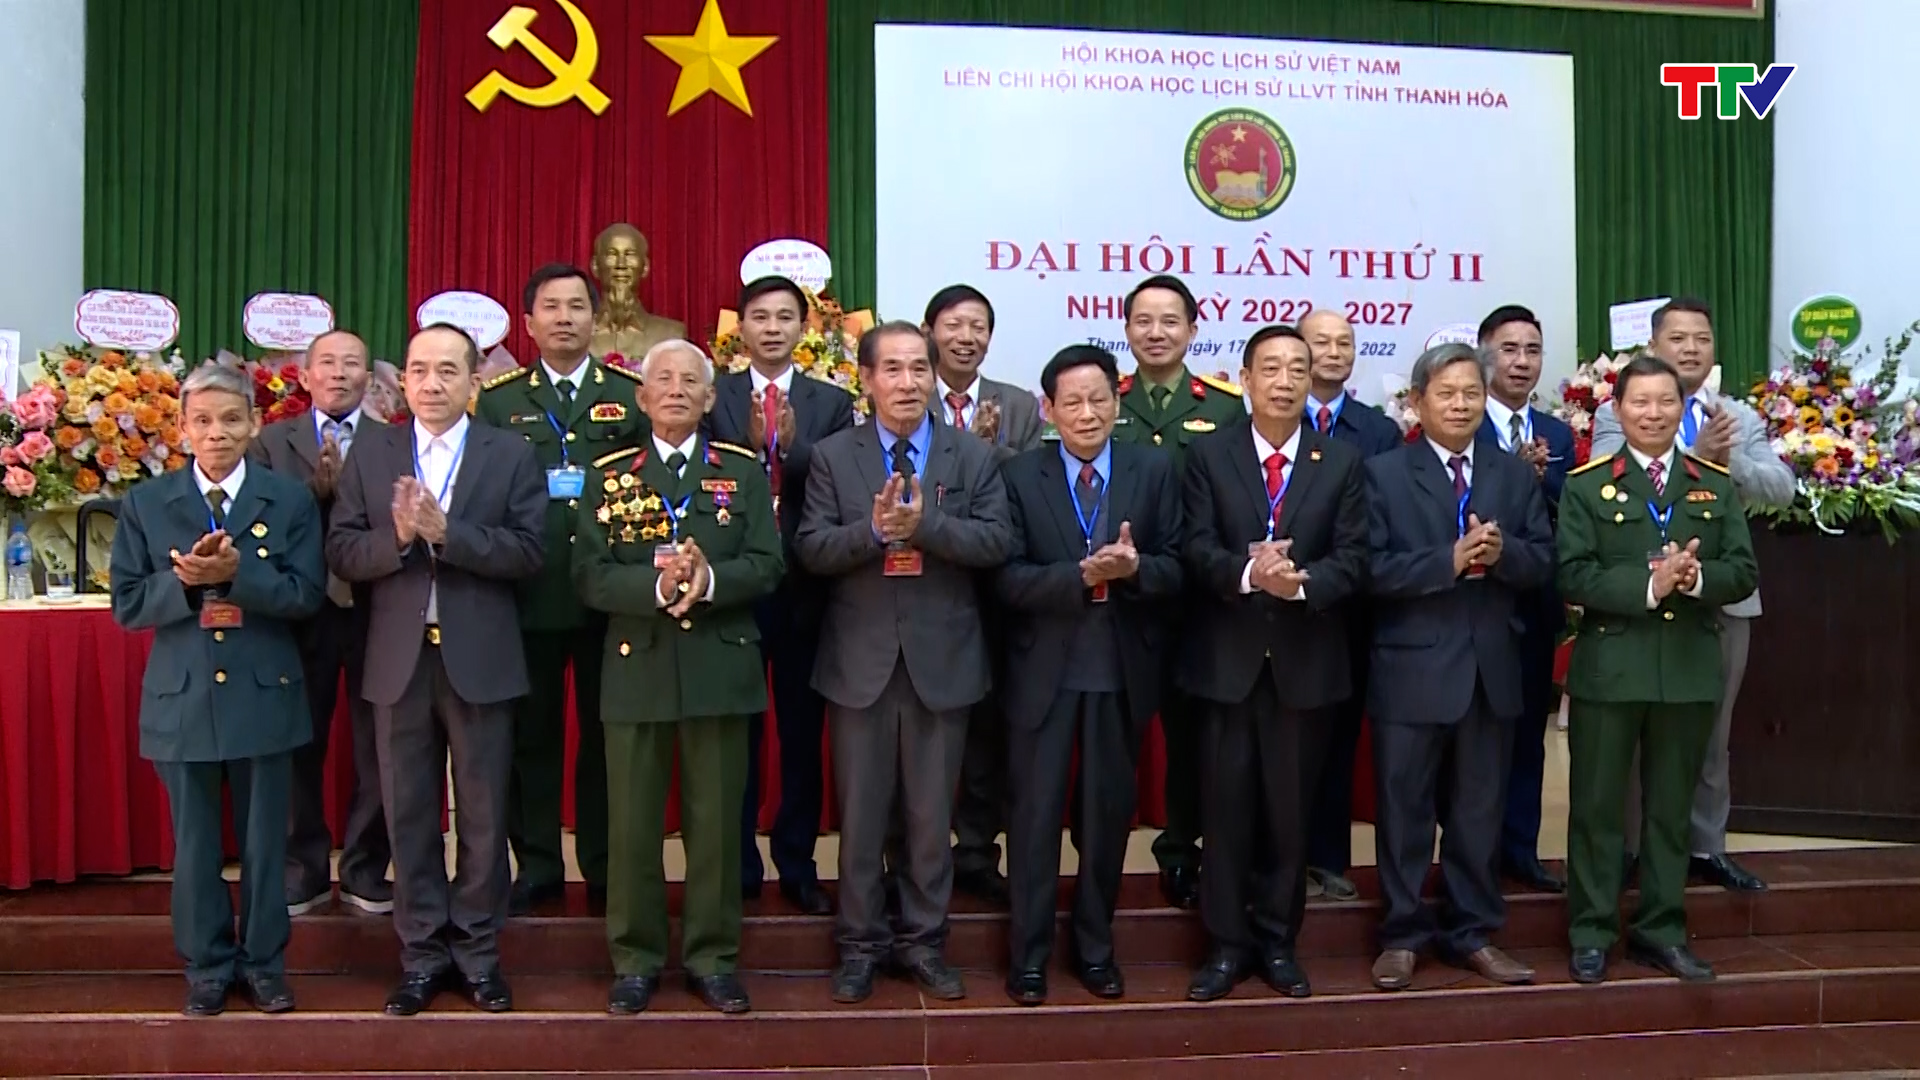 Đại hội Liên chi hội Khoa học Lịch sử lực lượng vũ trang tỉnh Thanh Hoá lần thứ II, nhiệm kỳ 2022-2027 - Ảnh 2.